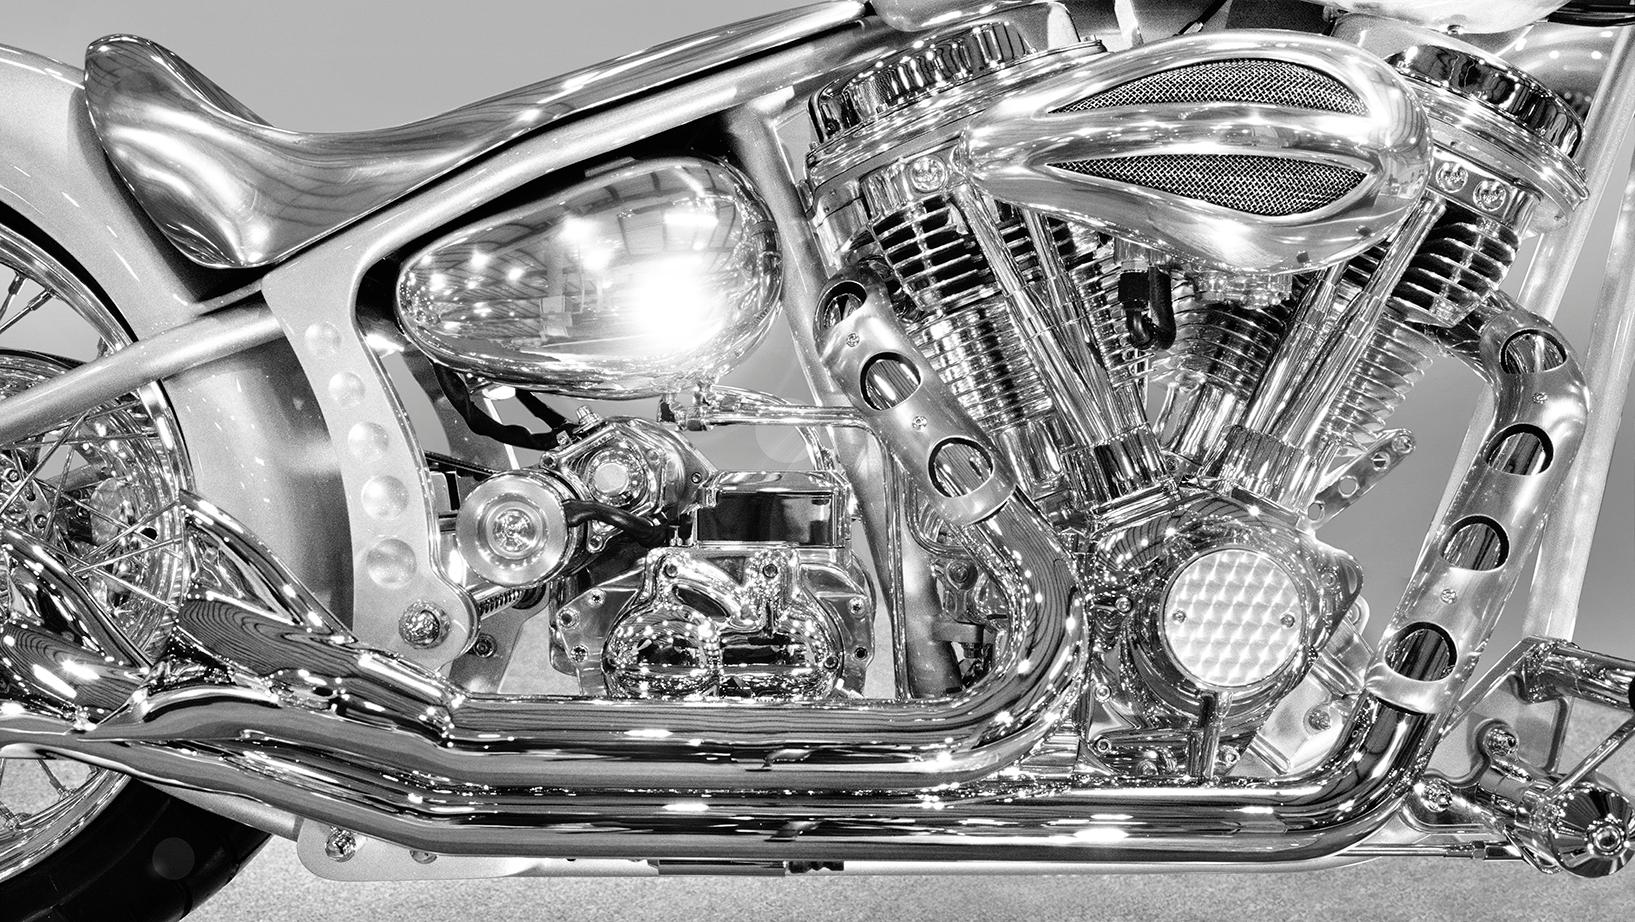 Chopper 2003 - photographie grand format de détails chromés emblématiques de Harley Davidson